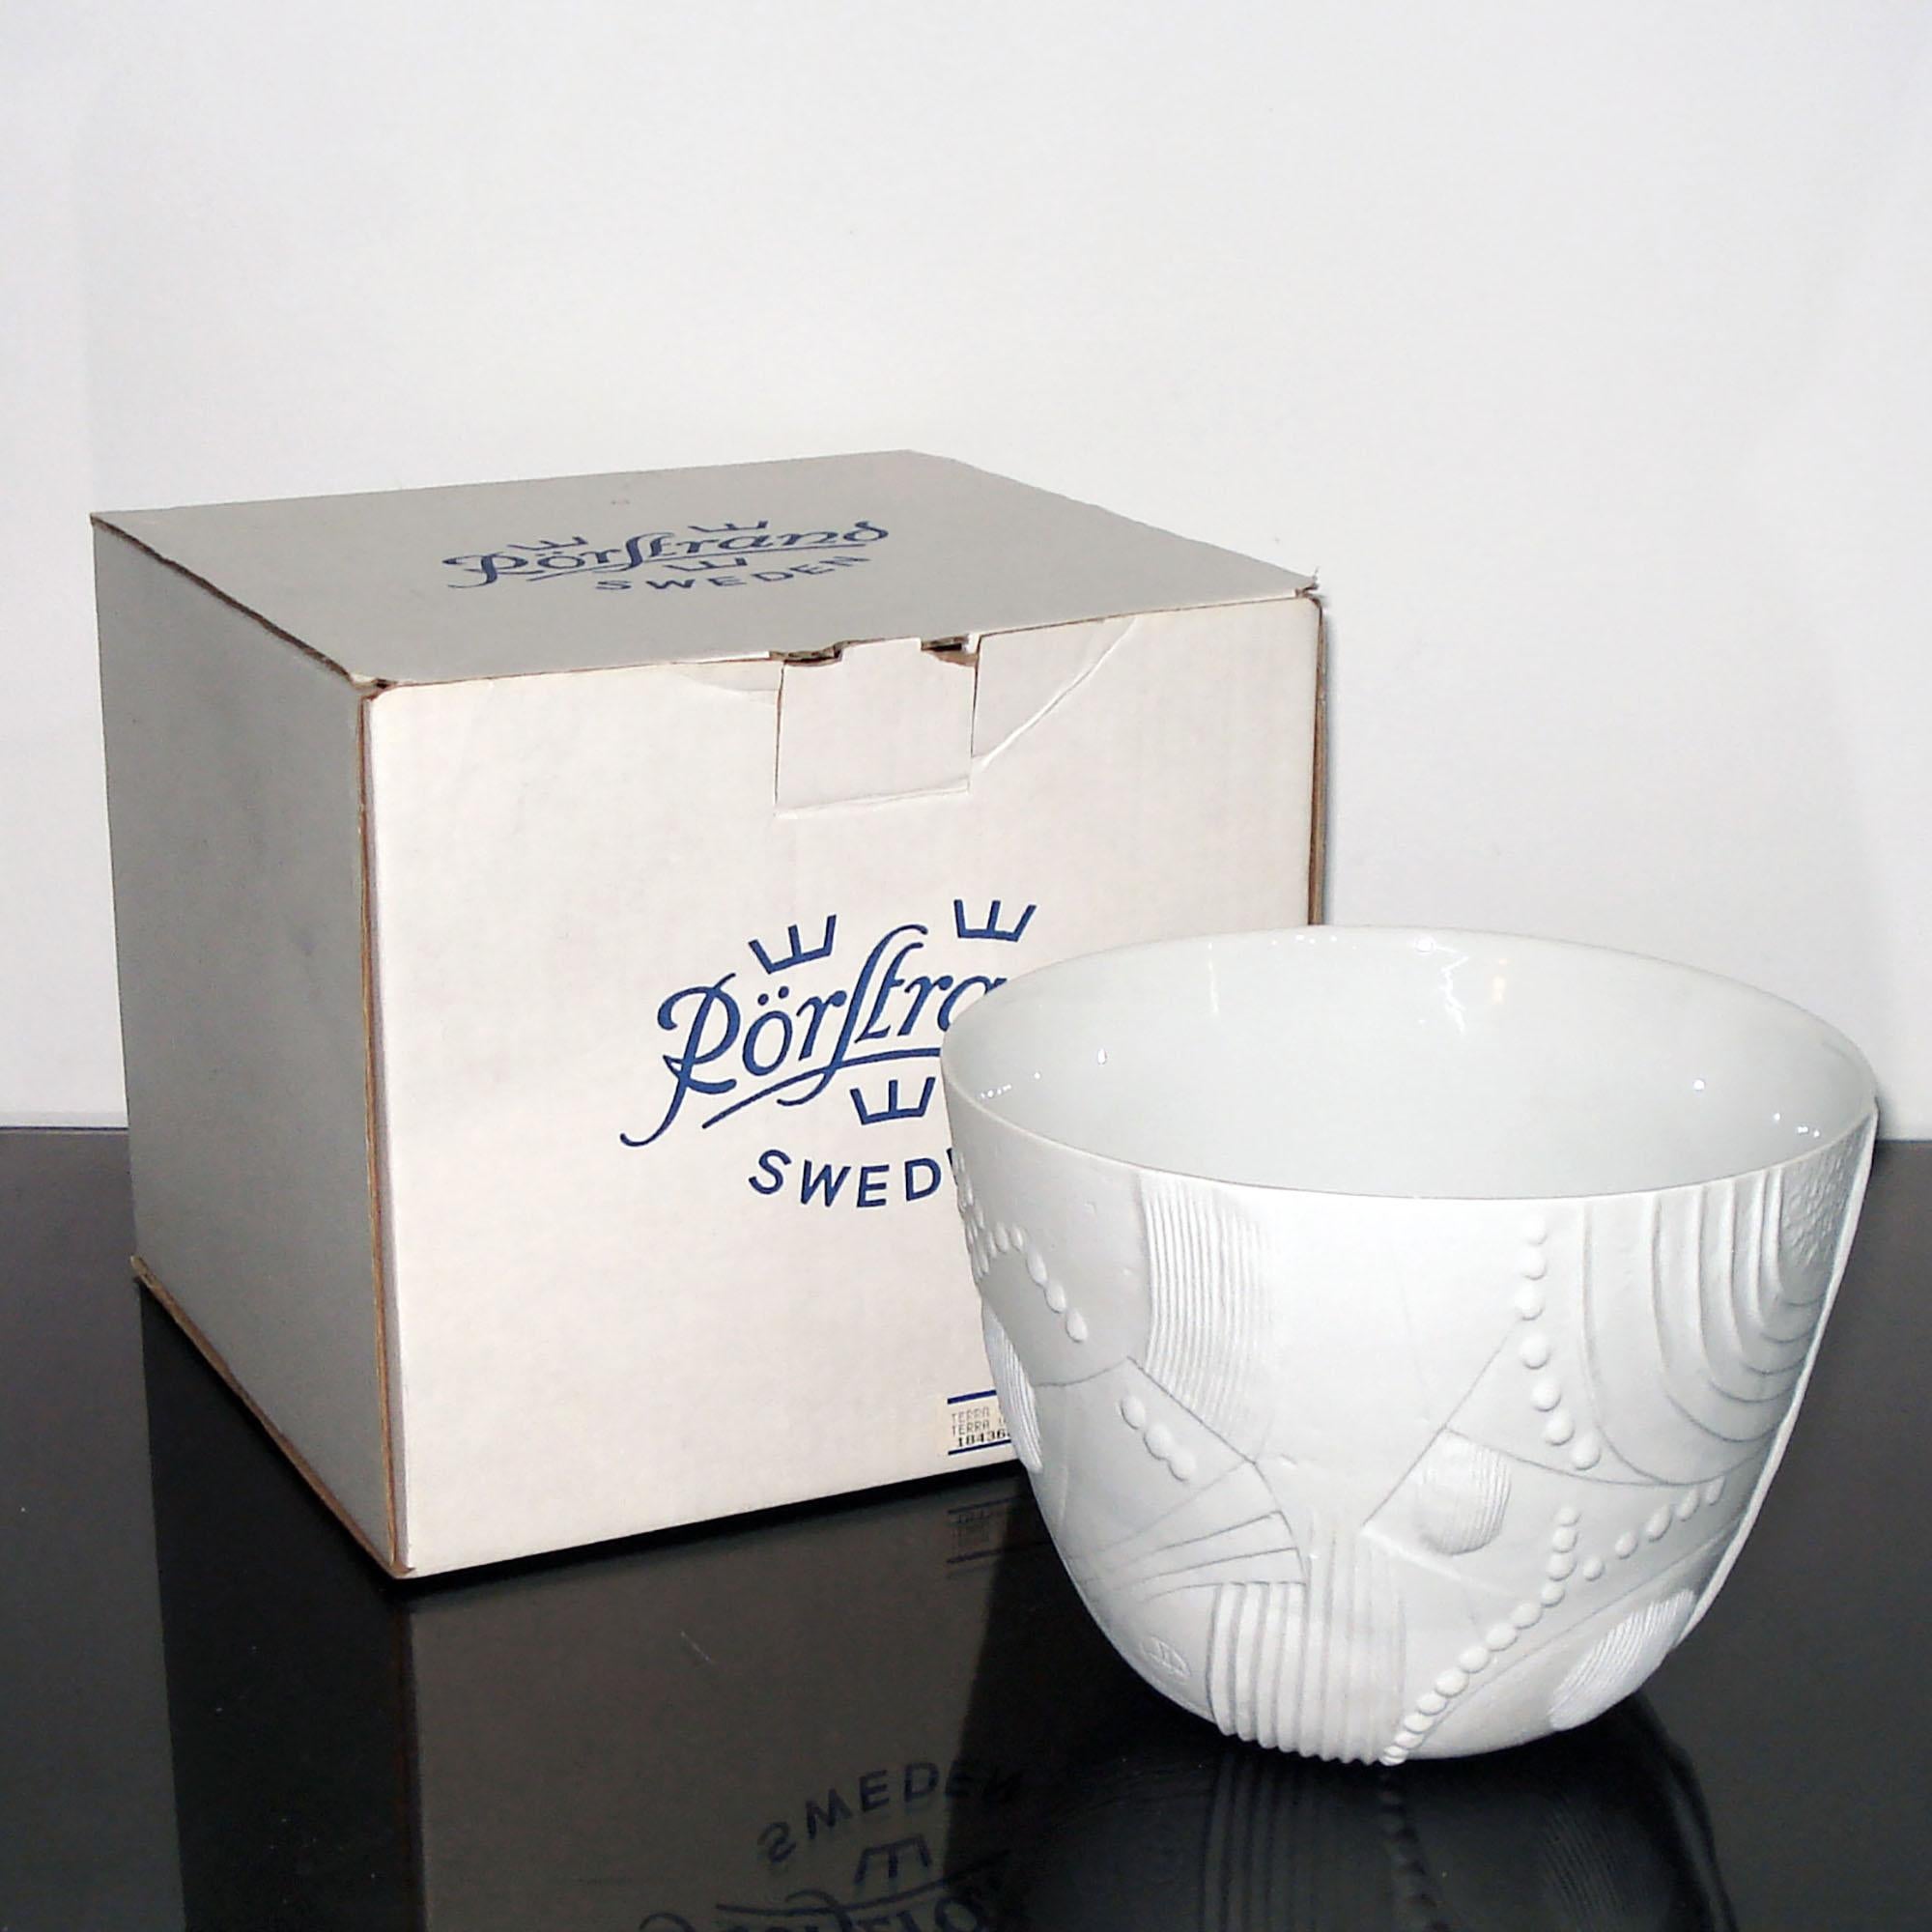 Swedish Mid-Century Modern Ceramic Flower Pot Designed by Bertil Vallien for Rörstrand